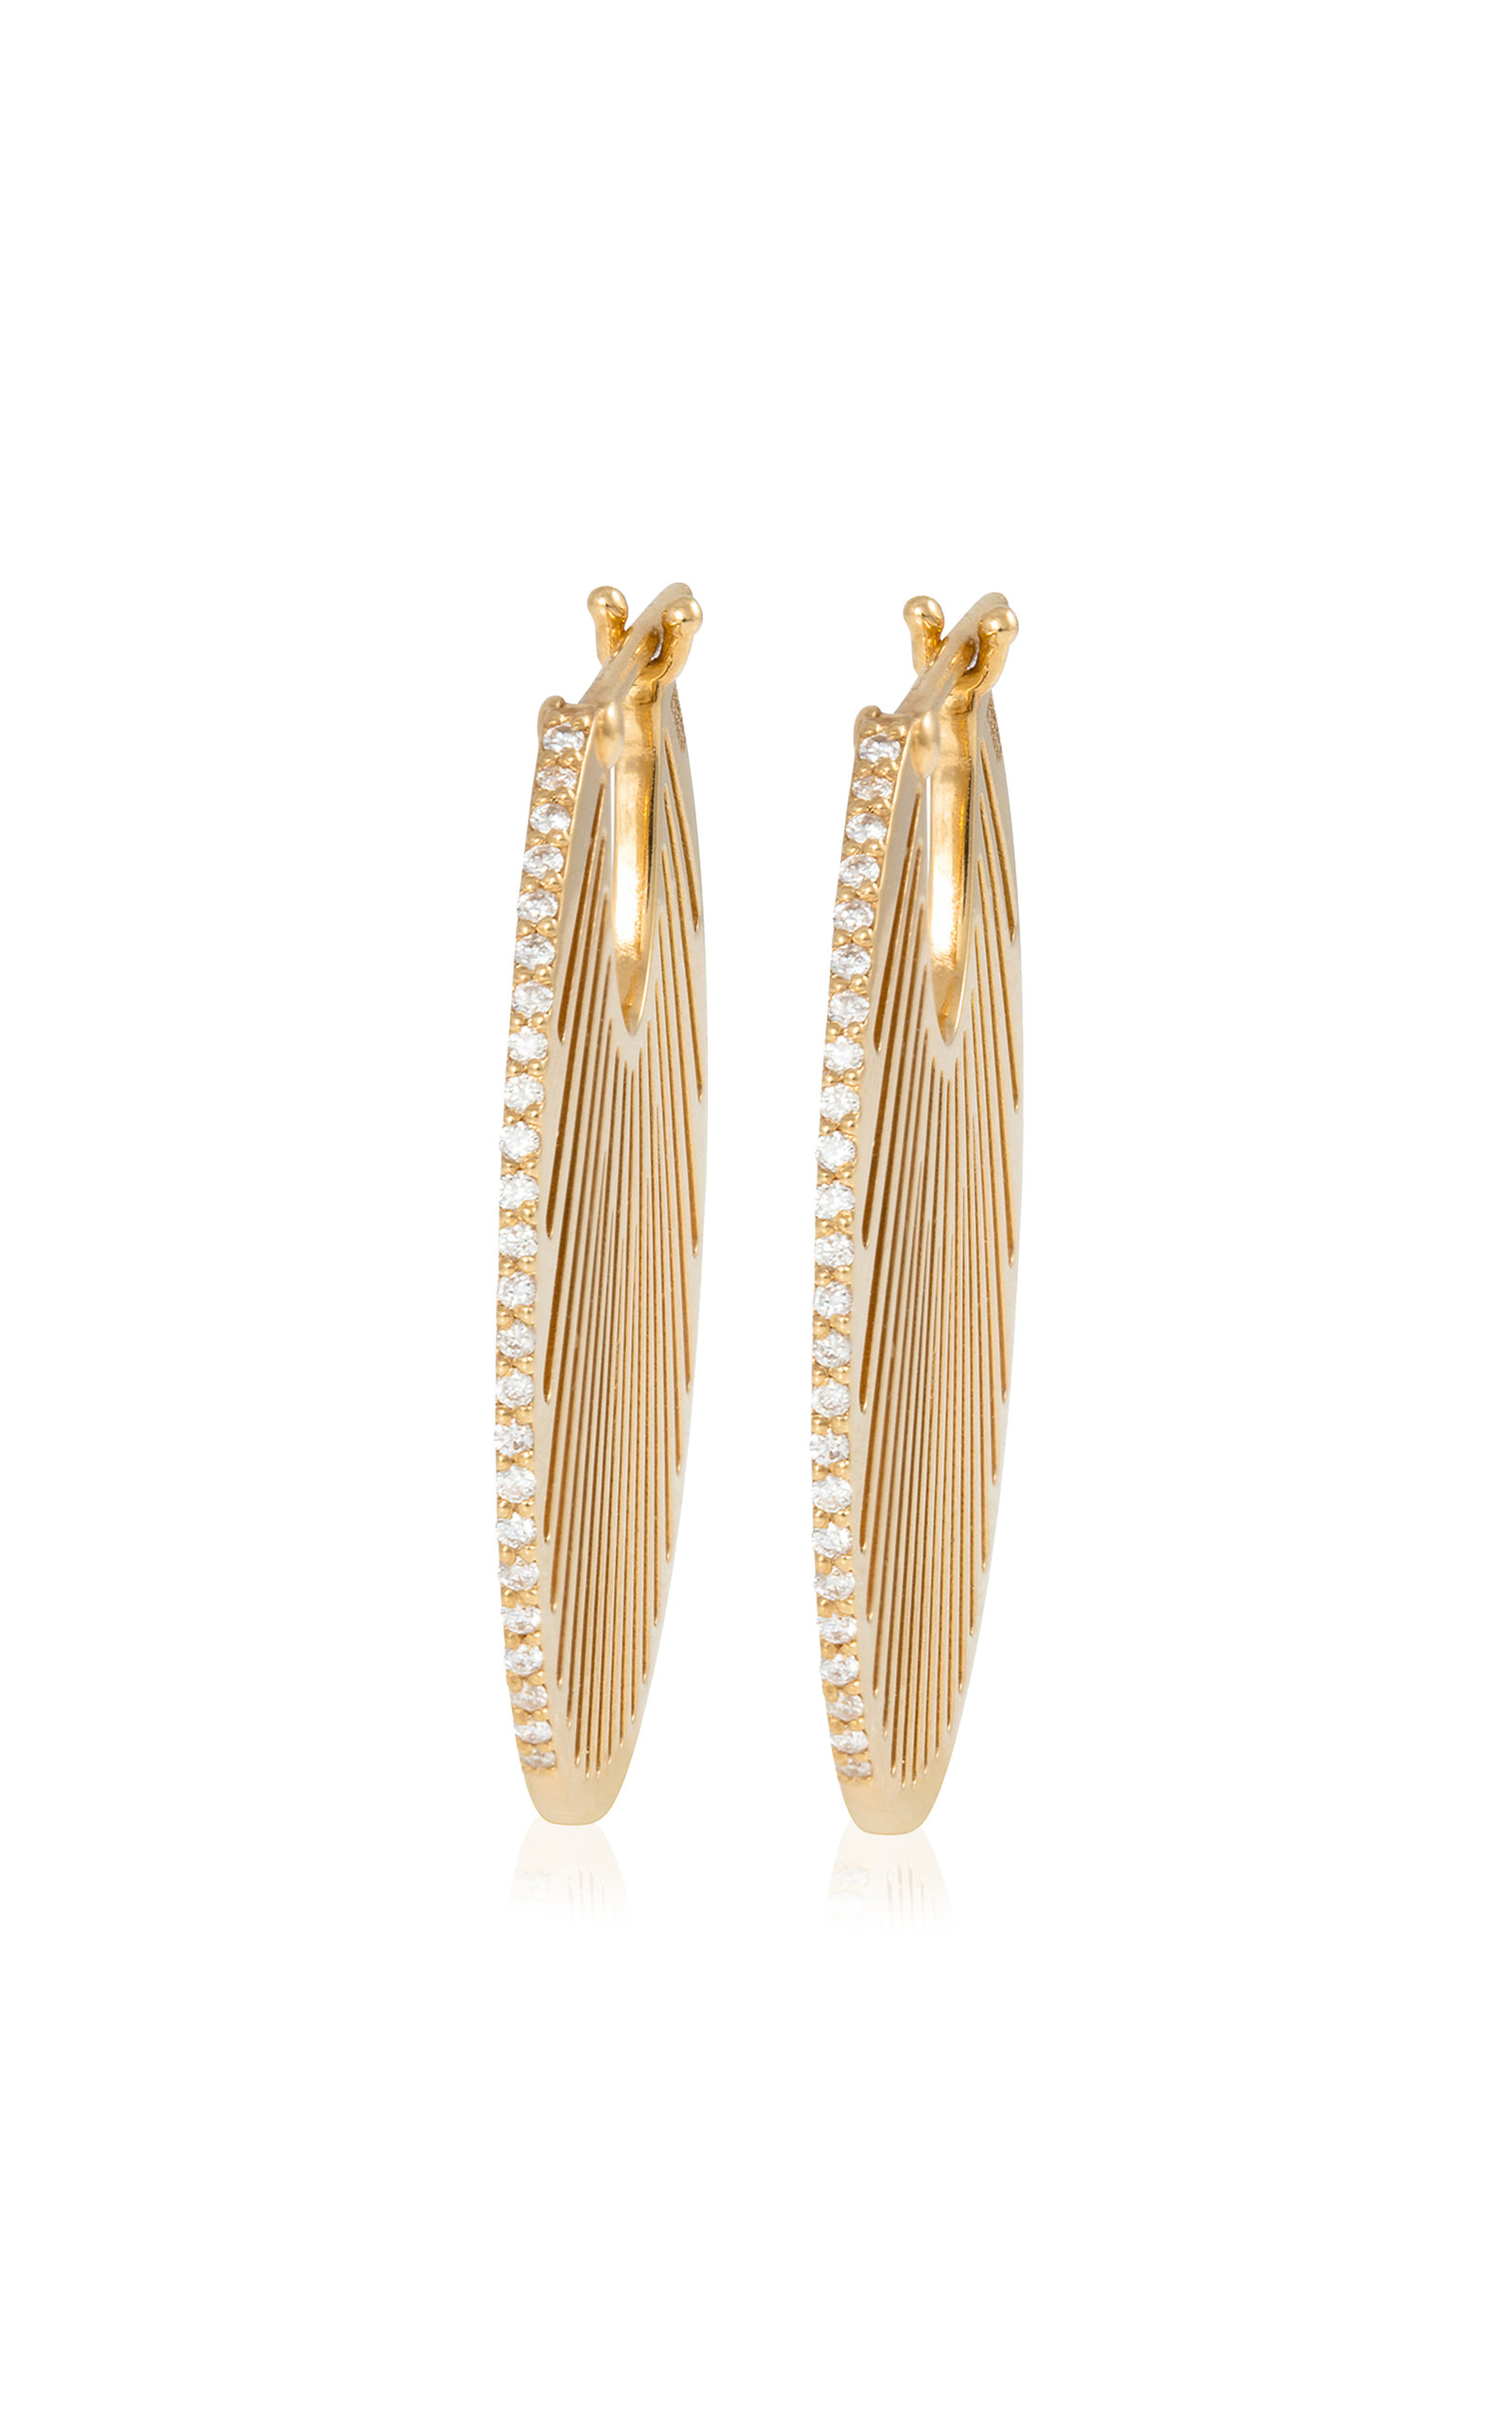 L'Atelier Nawbar Women's Flat Ray 18K Yellow Gold Diamond Hoop Earrings